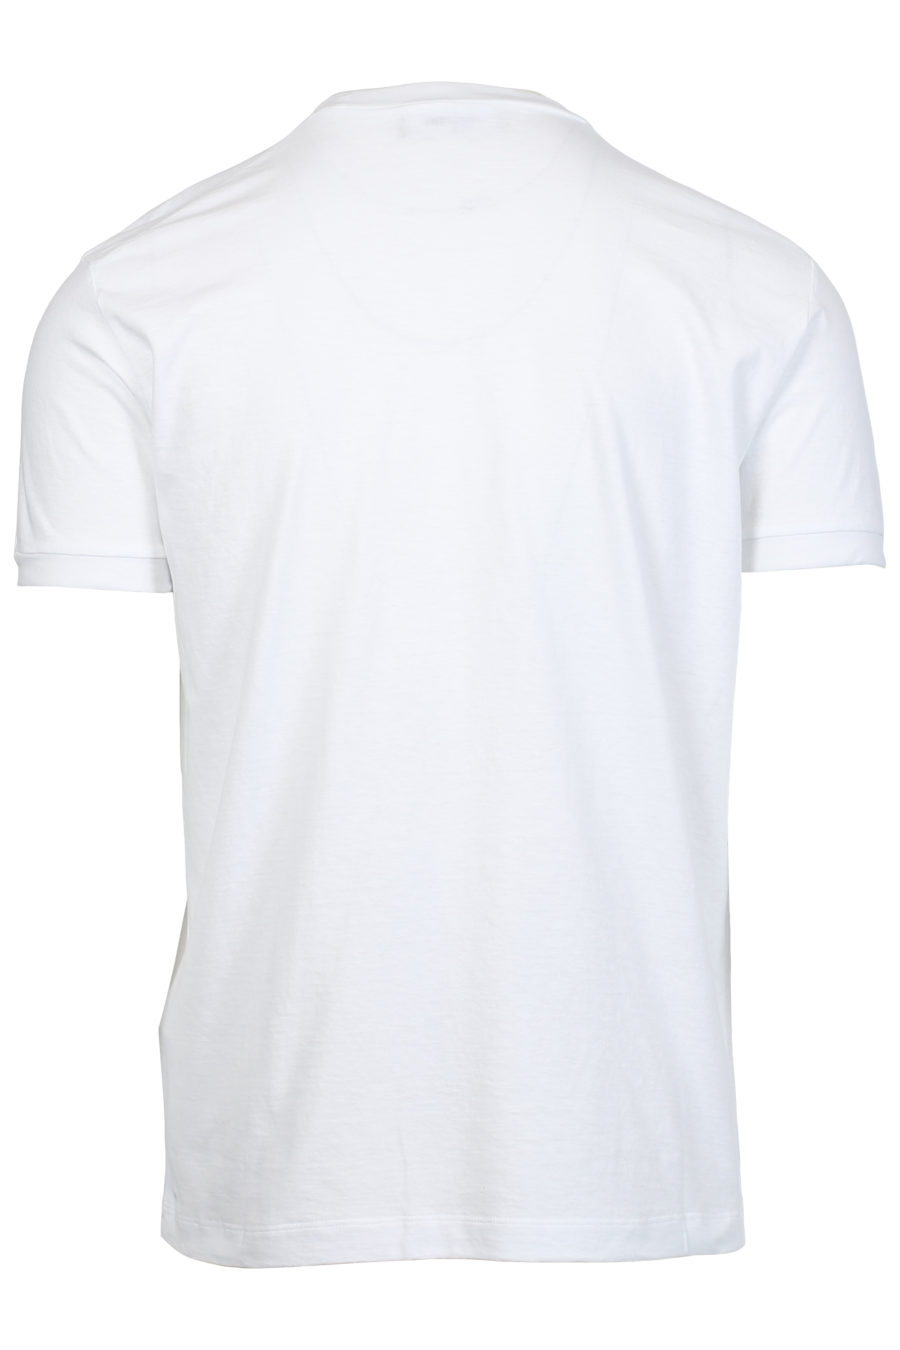 Camiseta blanca con estampado pequeño - IMG 2396 1